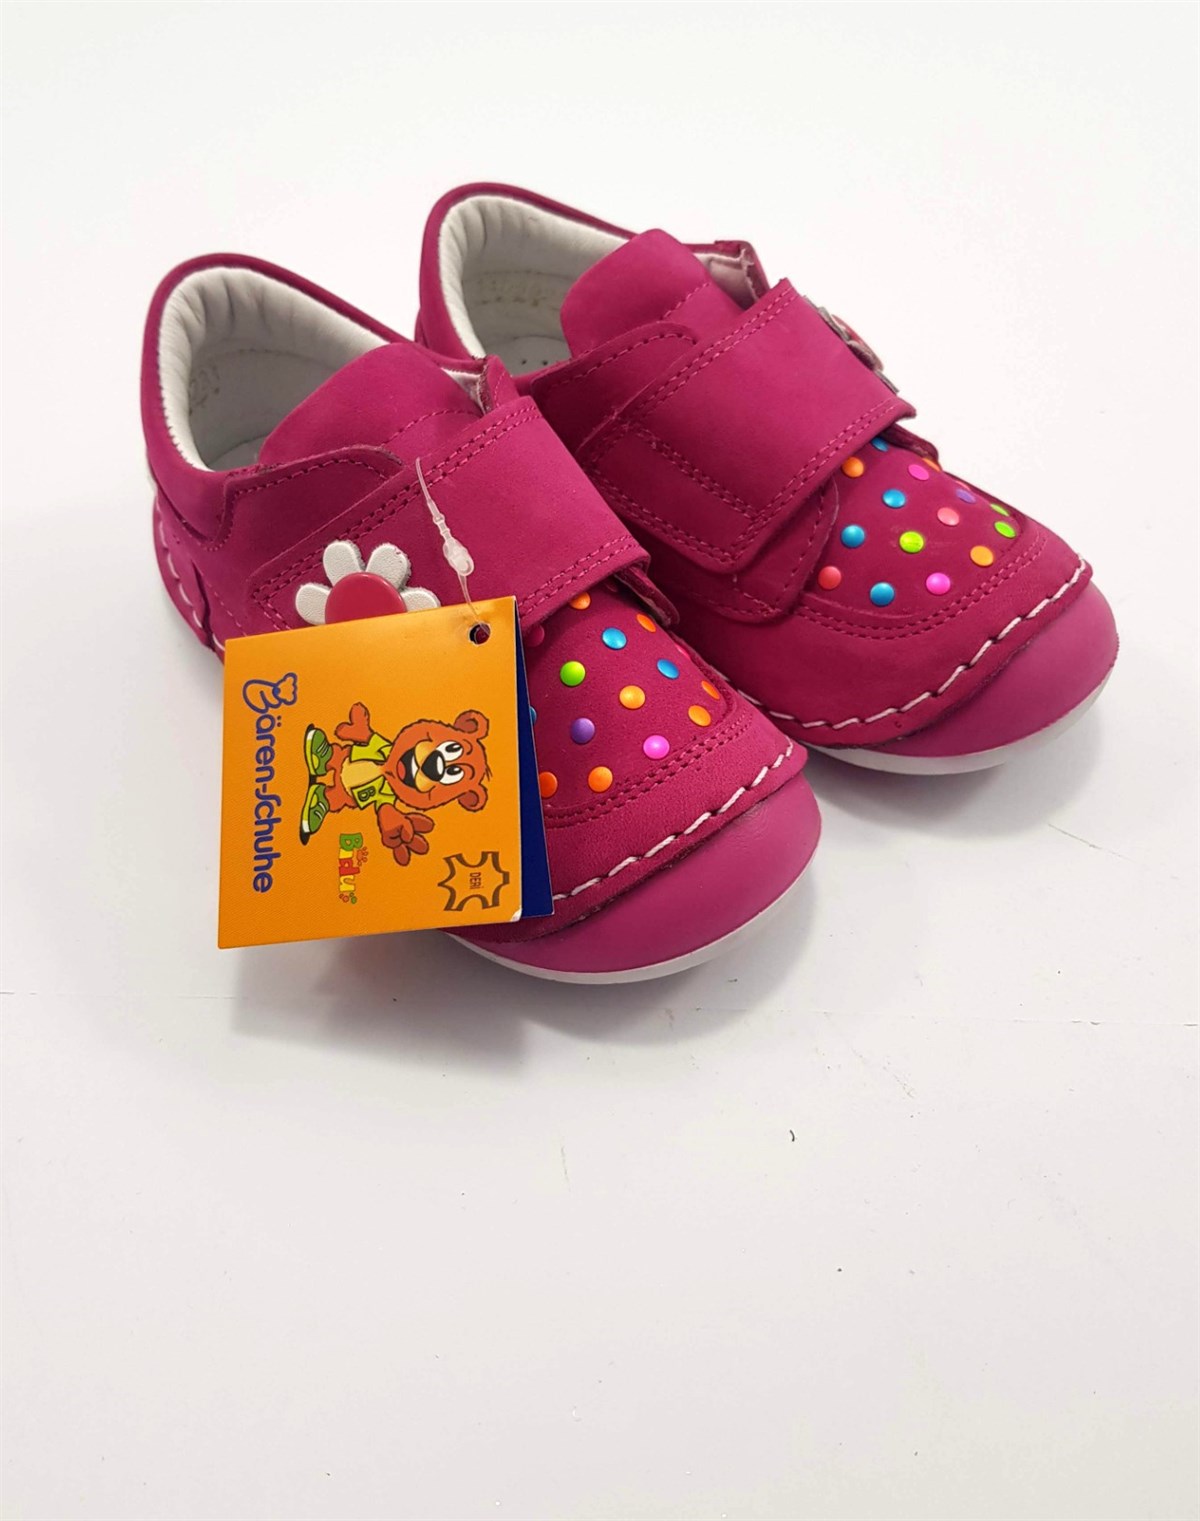 Bören-Scuhe Kız Bebek Ortopedik Ayakkabı 23